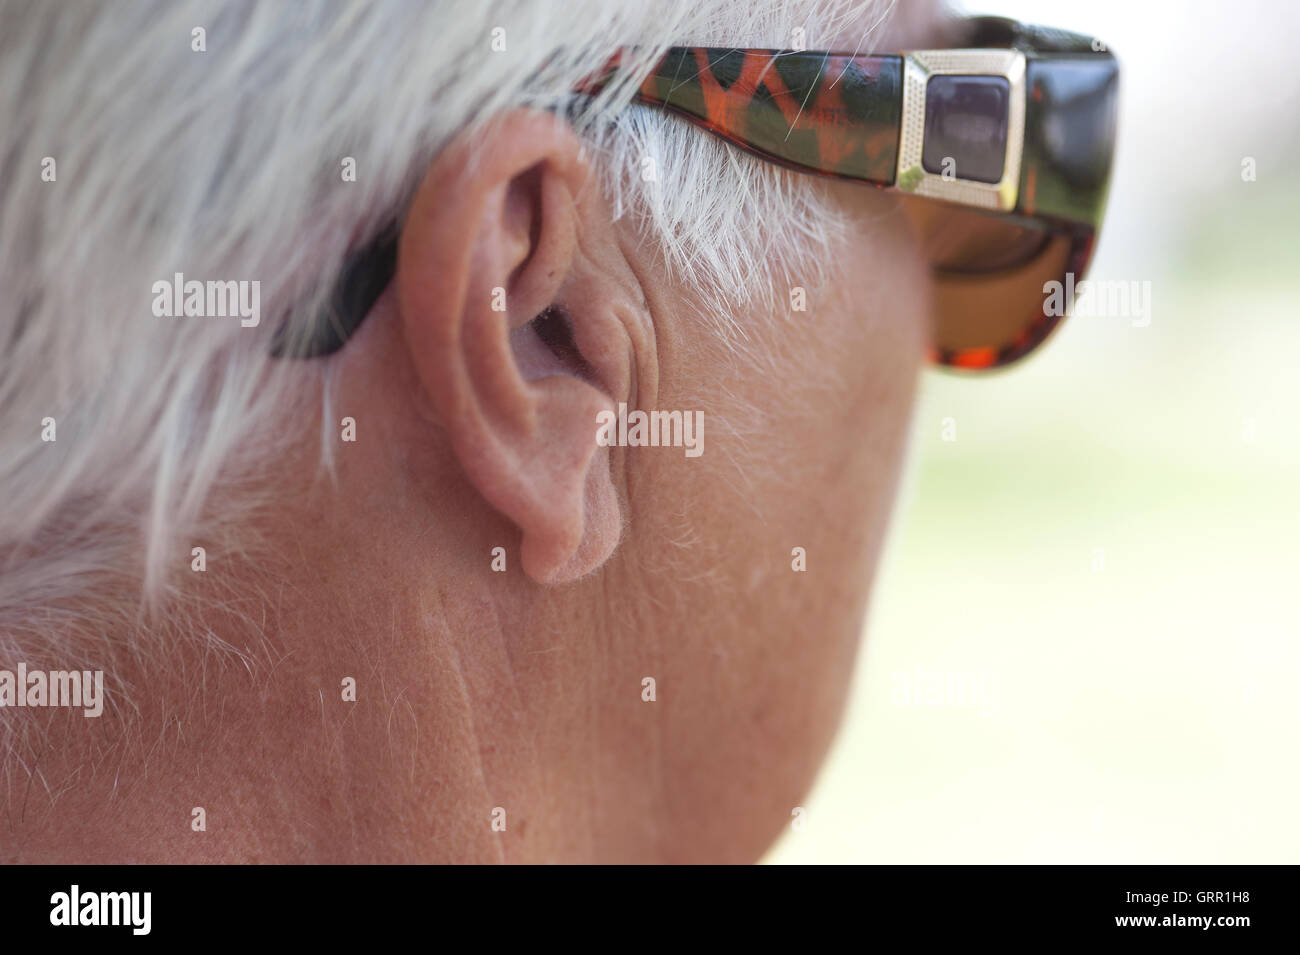 Weiße Haare und Brille über Ohr Stockfotografie - Alamy